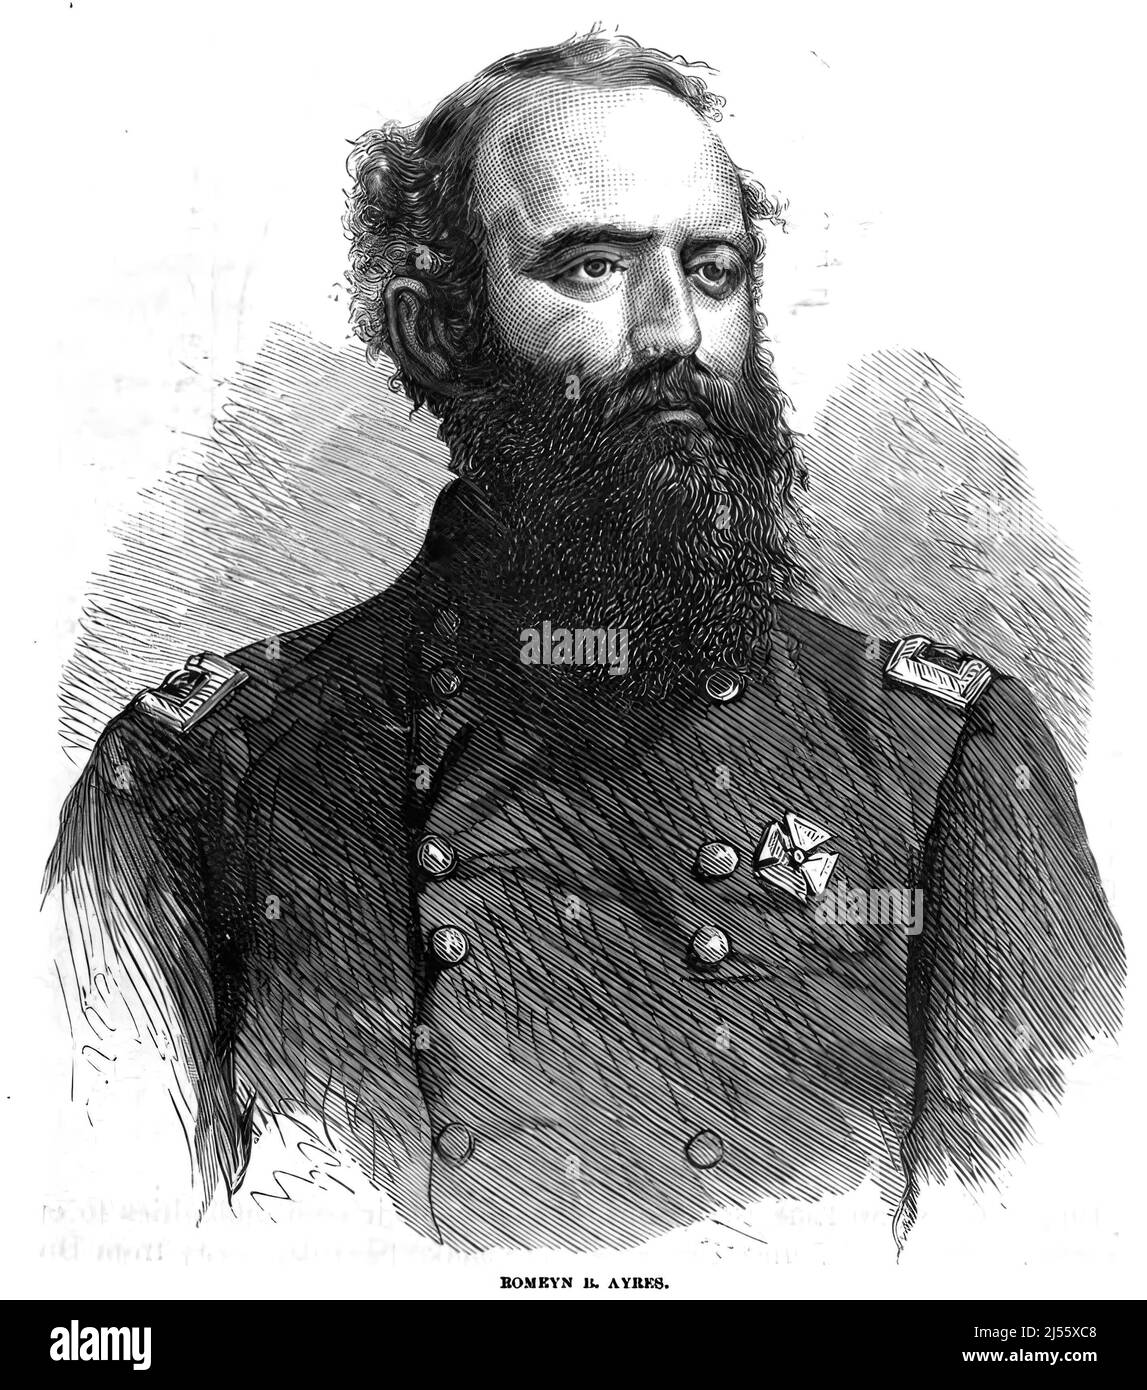 Portrait de Romeyn Beck Ayres, général de l'armée de l'Union dans la guerre civile américaine. illustration du siècle 19th Banque D'Images